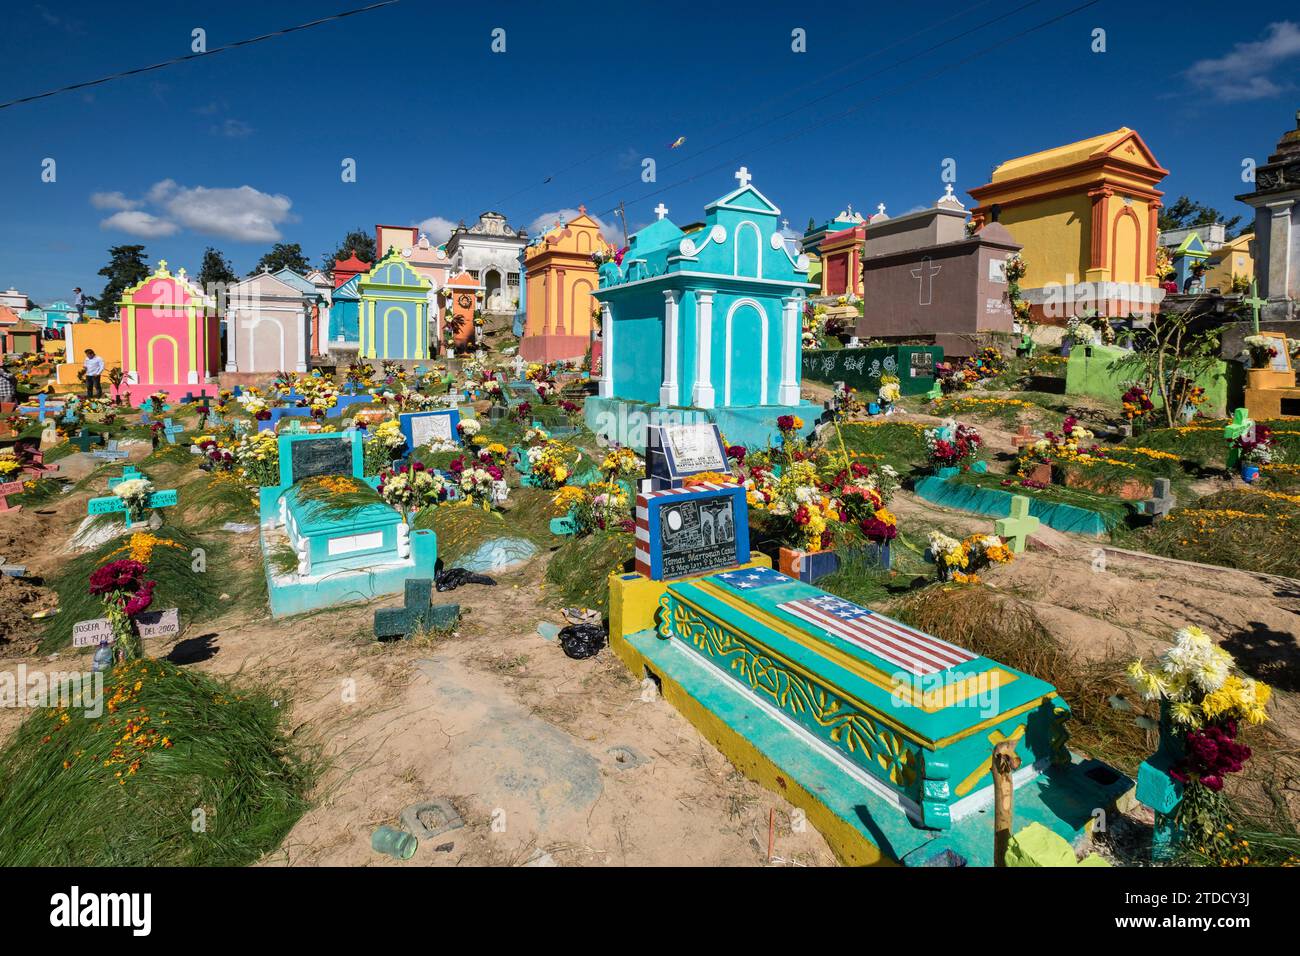 tumbas de colores, celebracion del dia de muertos en el Cementerio General, Santo Tomás Chichicastenango, República de Guatemala, América Central Stock Photo